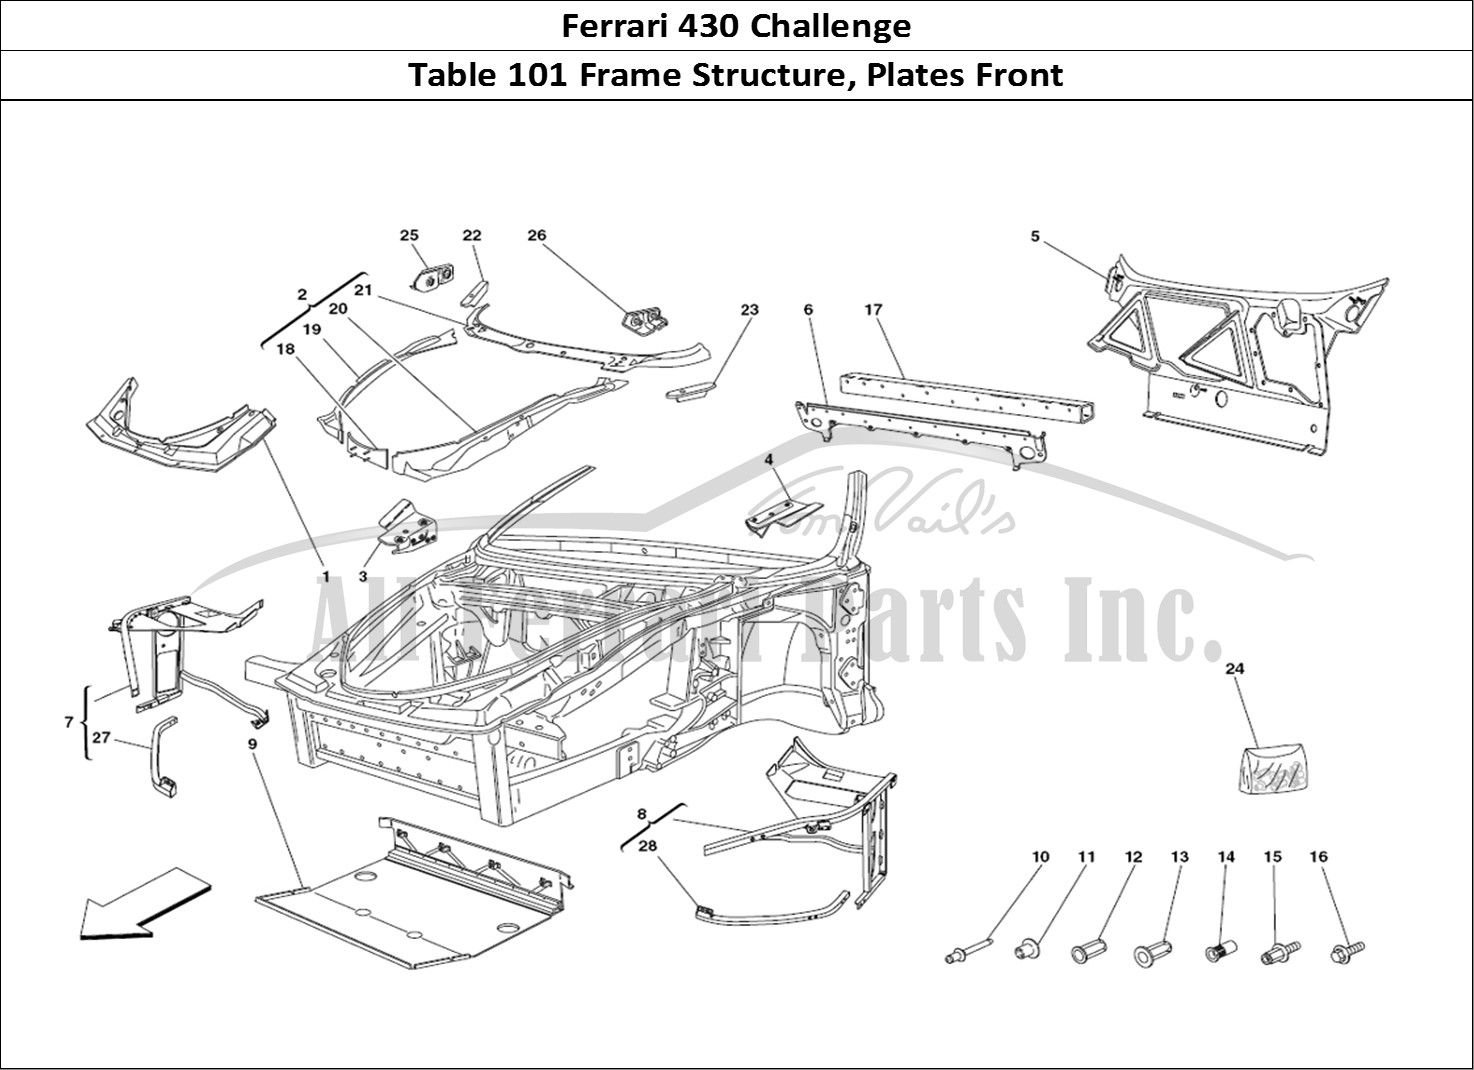 Ferrari Parts Ferrari 430 Challenge (2006) Page 101 Frame - Front Elements St